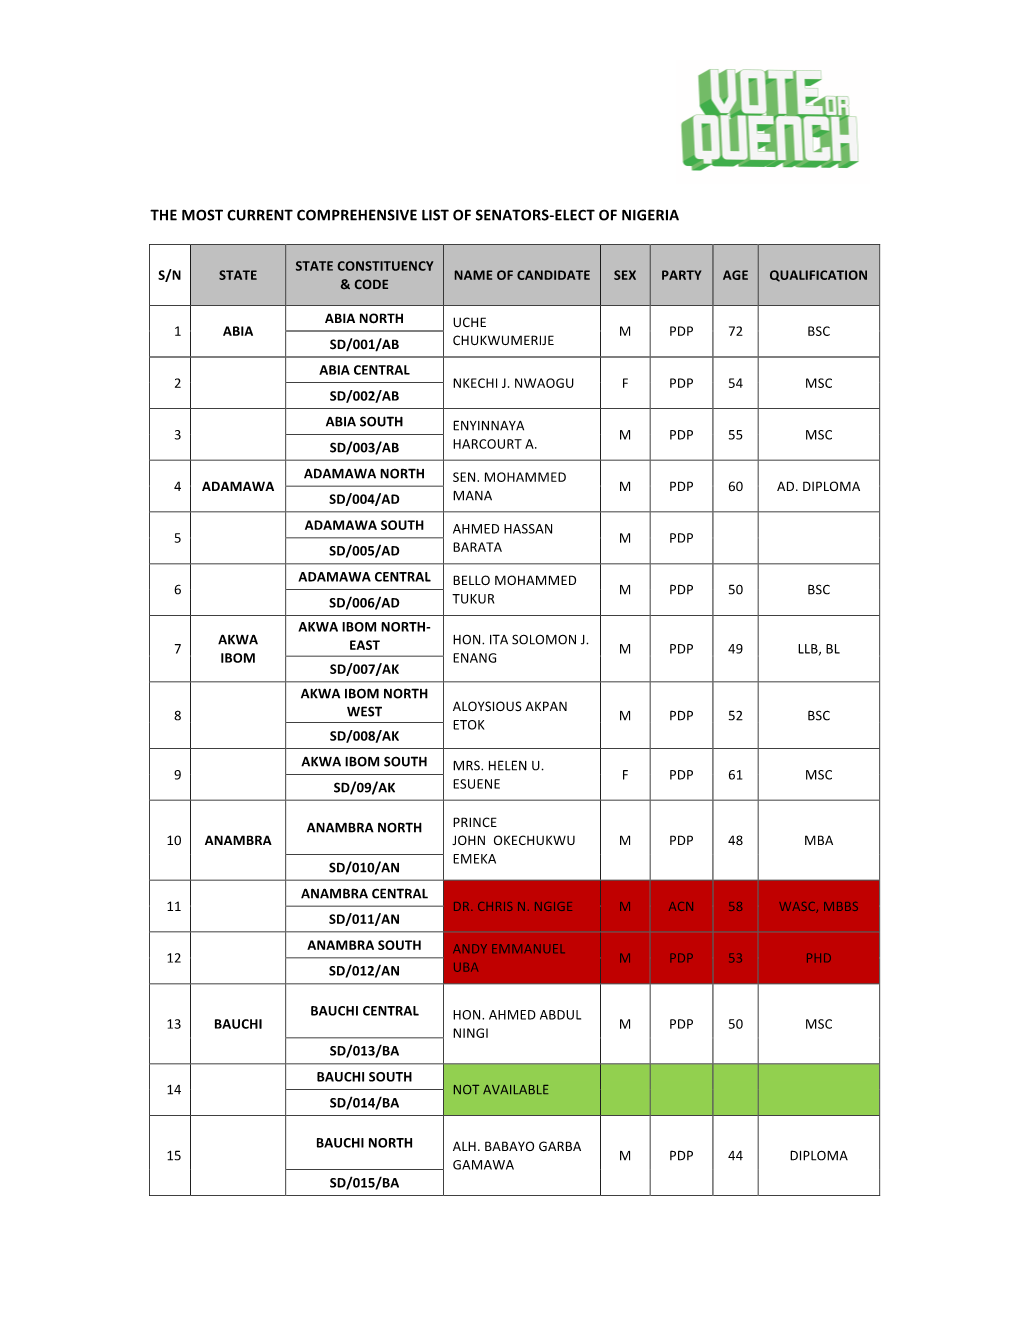 The Most Current Comprehensive List of Senators-Elect of Nigeria